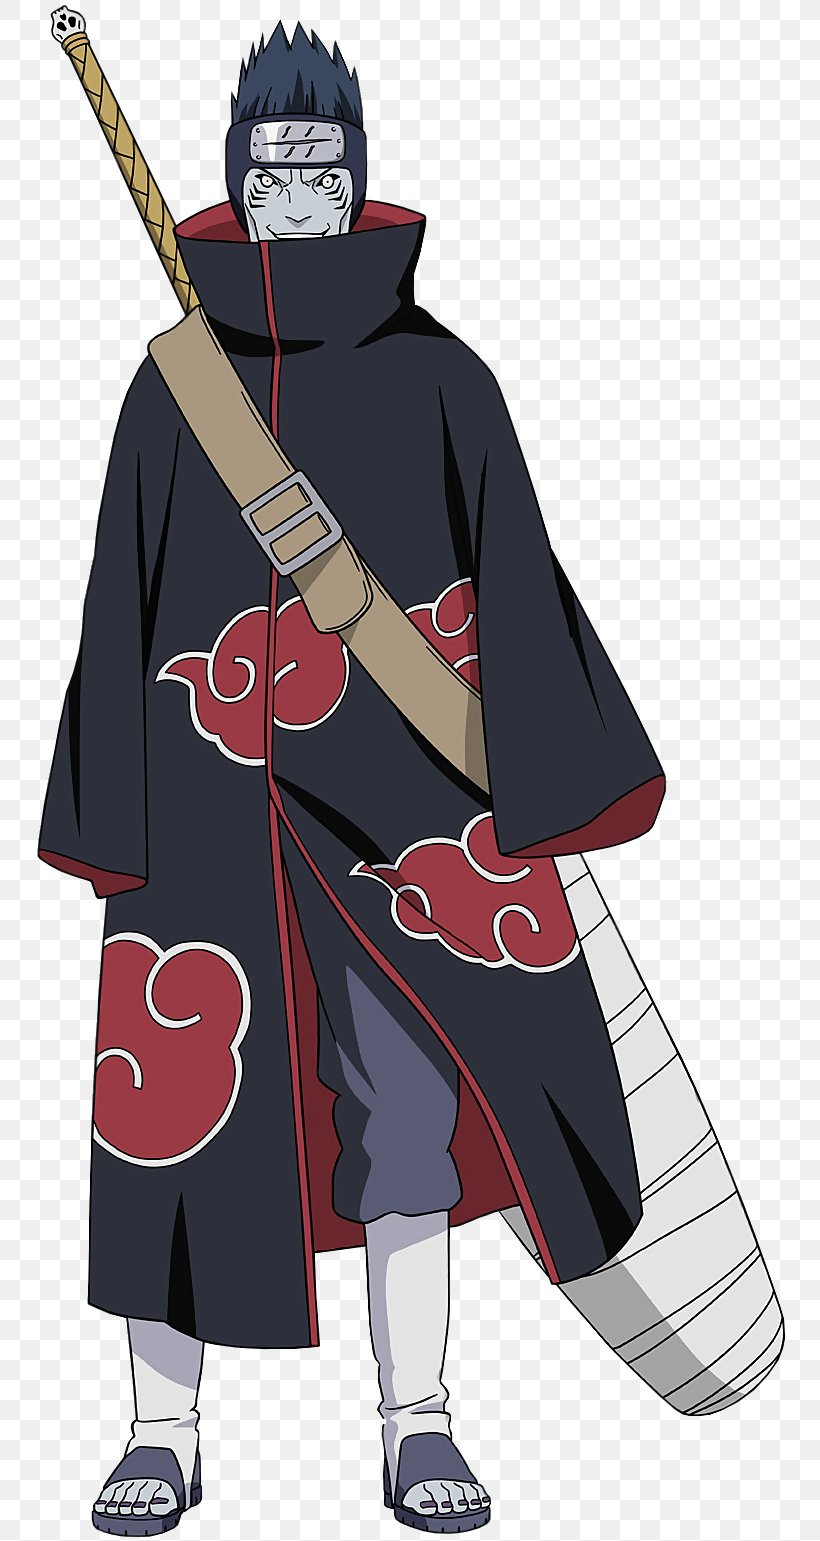 Kisame Hoshigaki Naruto Uzumaki Sasuke Uchiha Gaara Itachi Uchiha, PNG ...